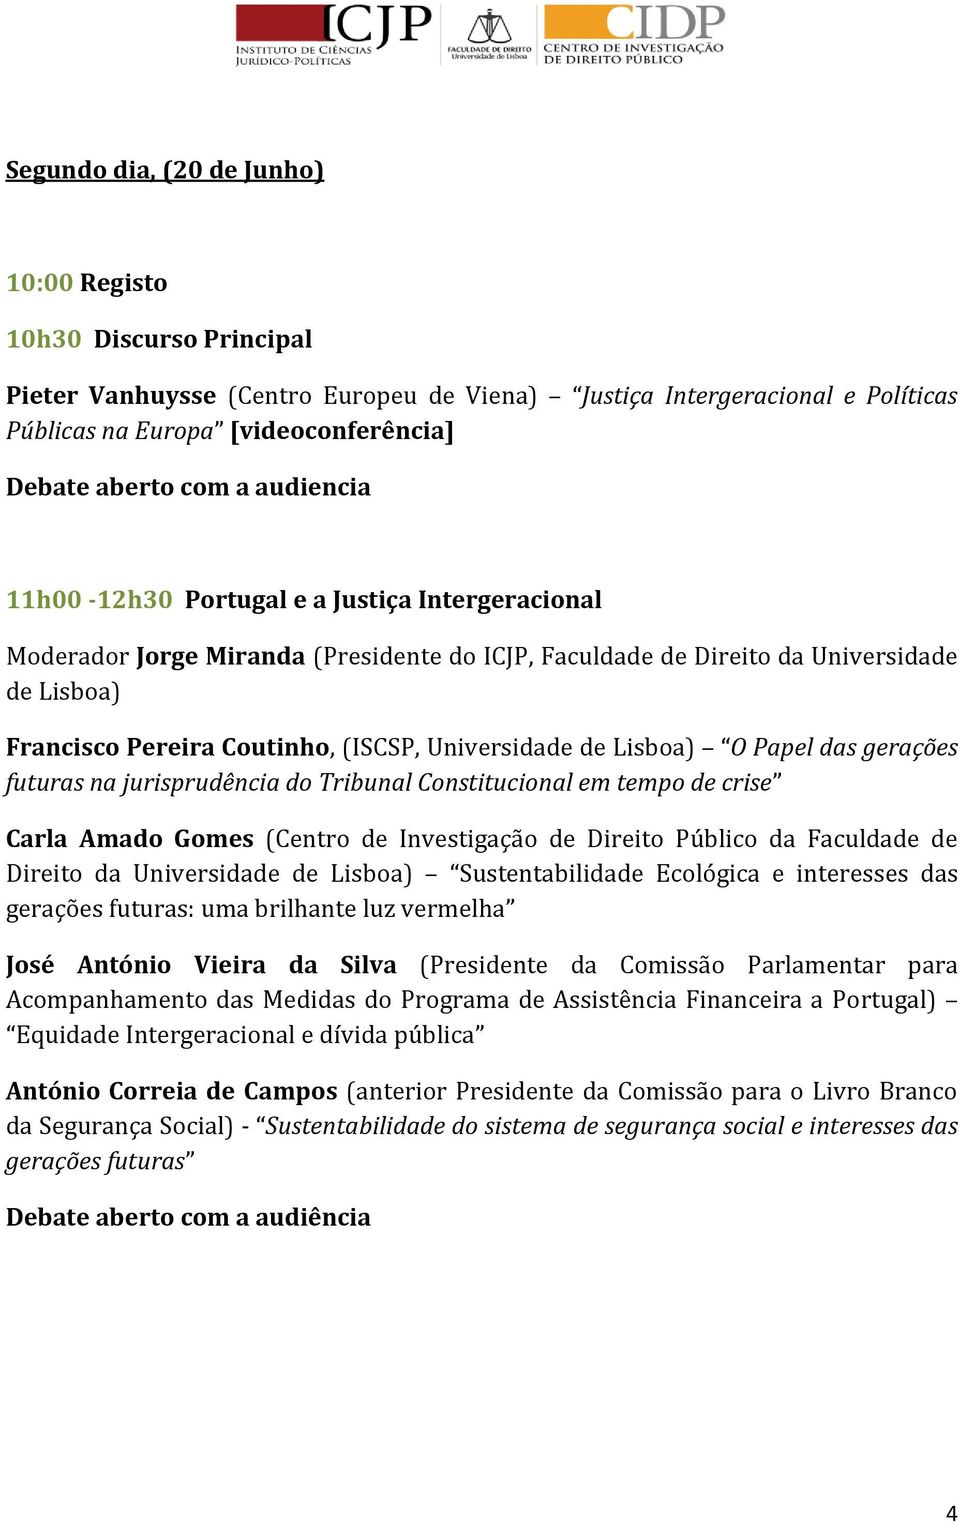 Universidade de Lisboa) O Papel das gerações futuras na jurisprudência do Tribunal Constitucional em tempo de crise Carla Amado Gomes (Centro de Investigação de Direito Público da Faculdade de